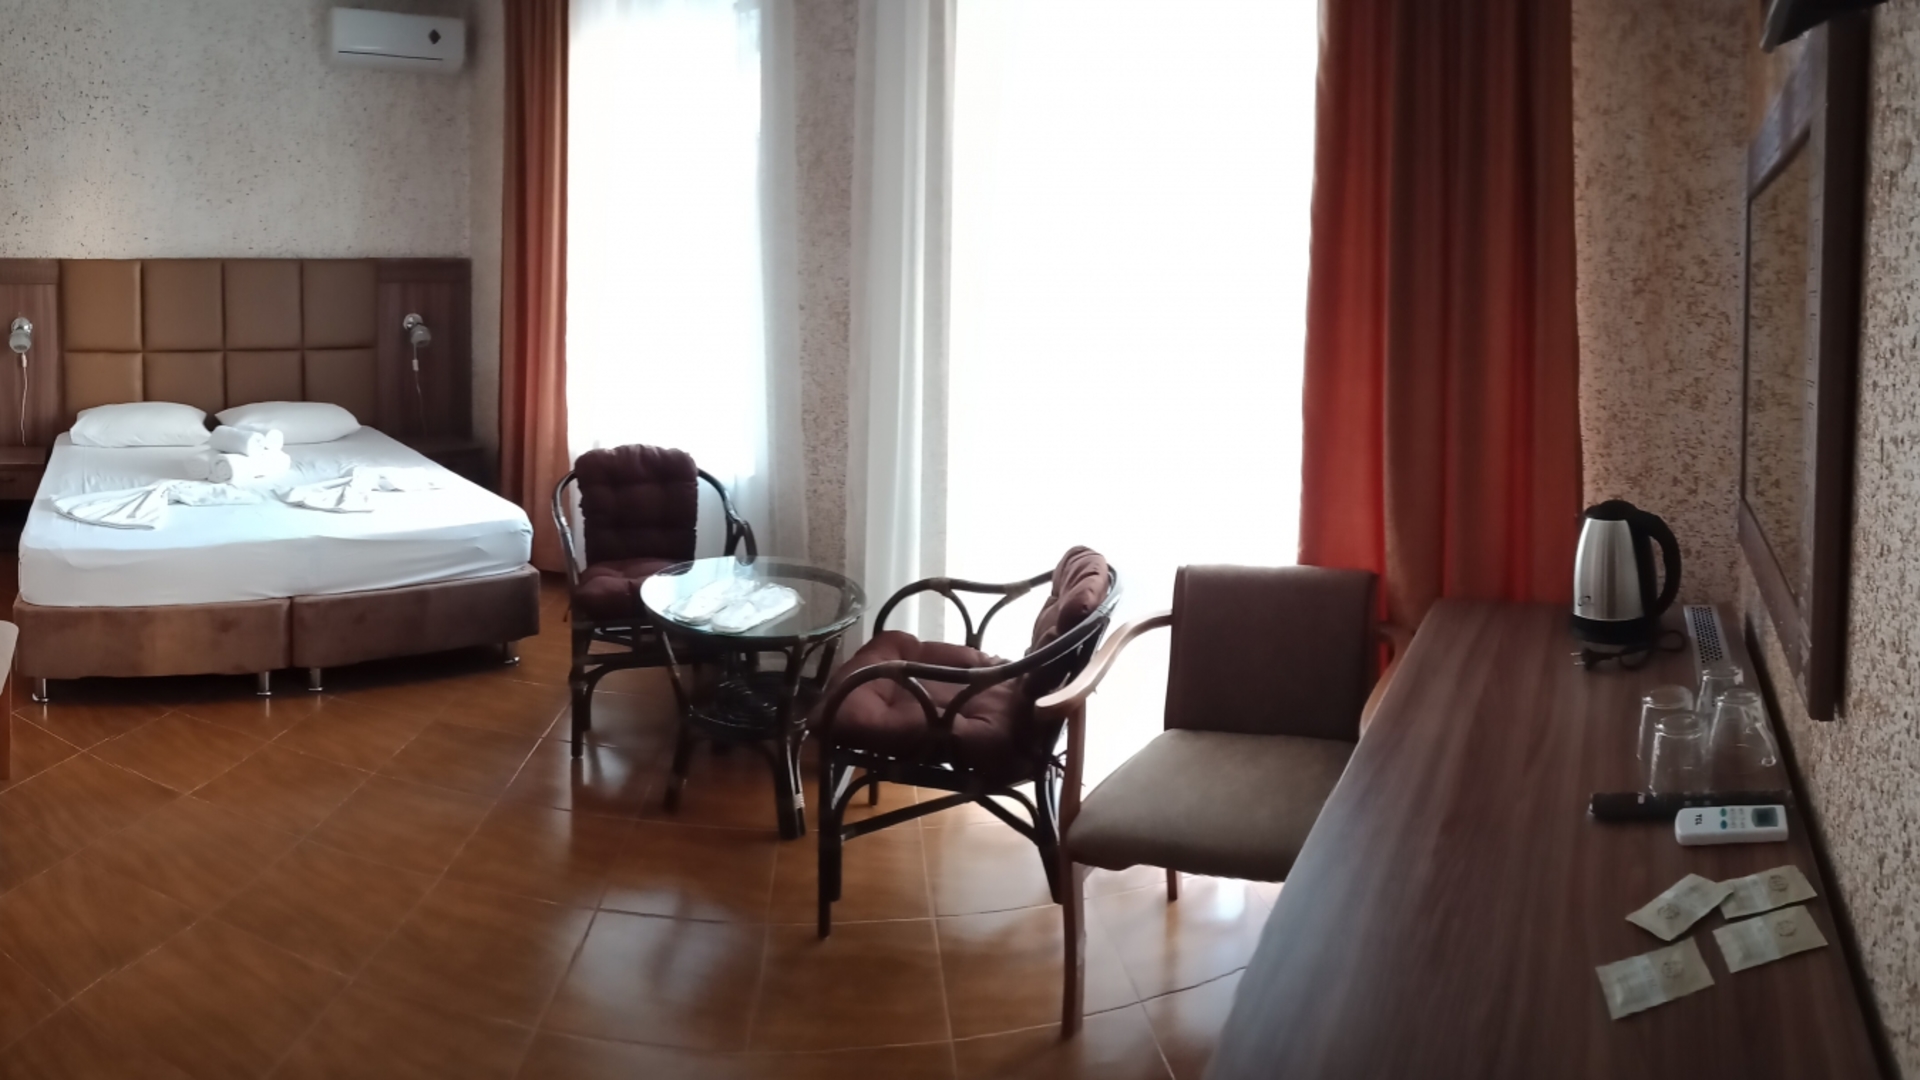 Магнолия отель в абхазии